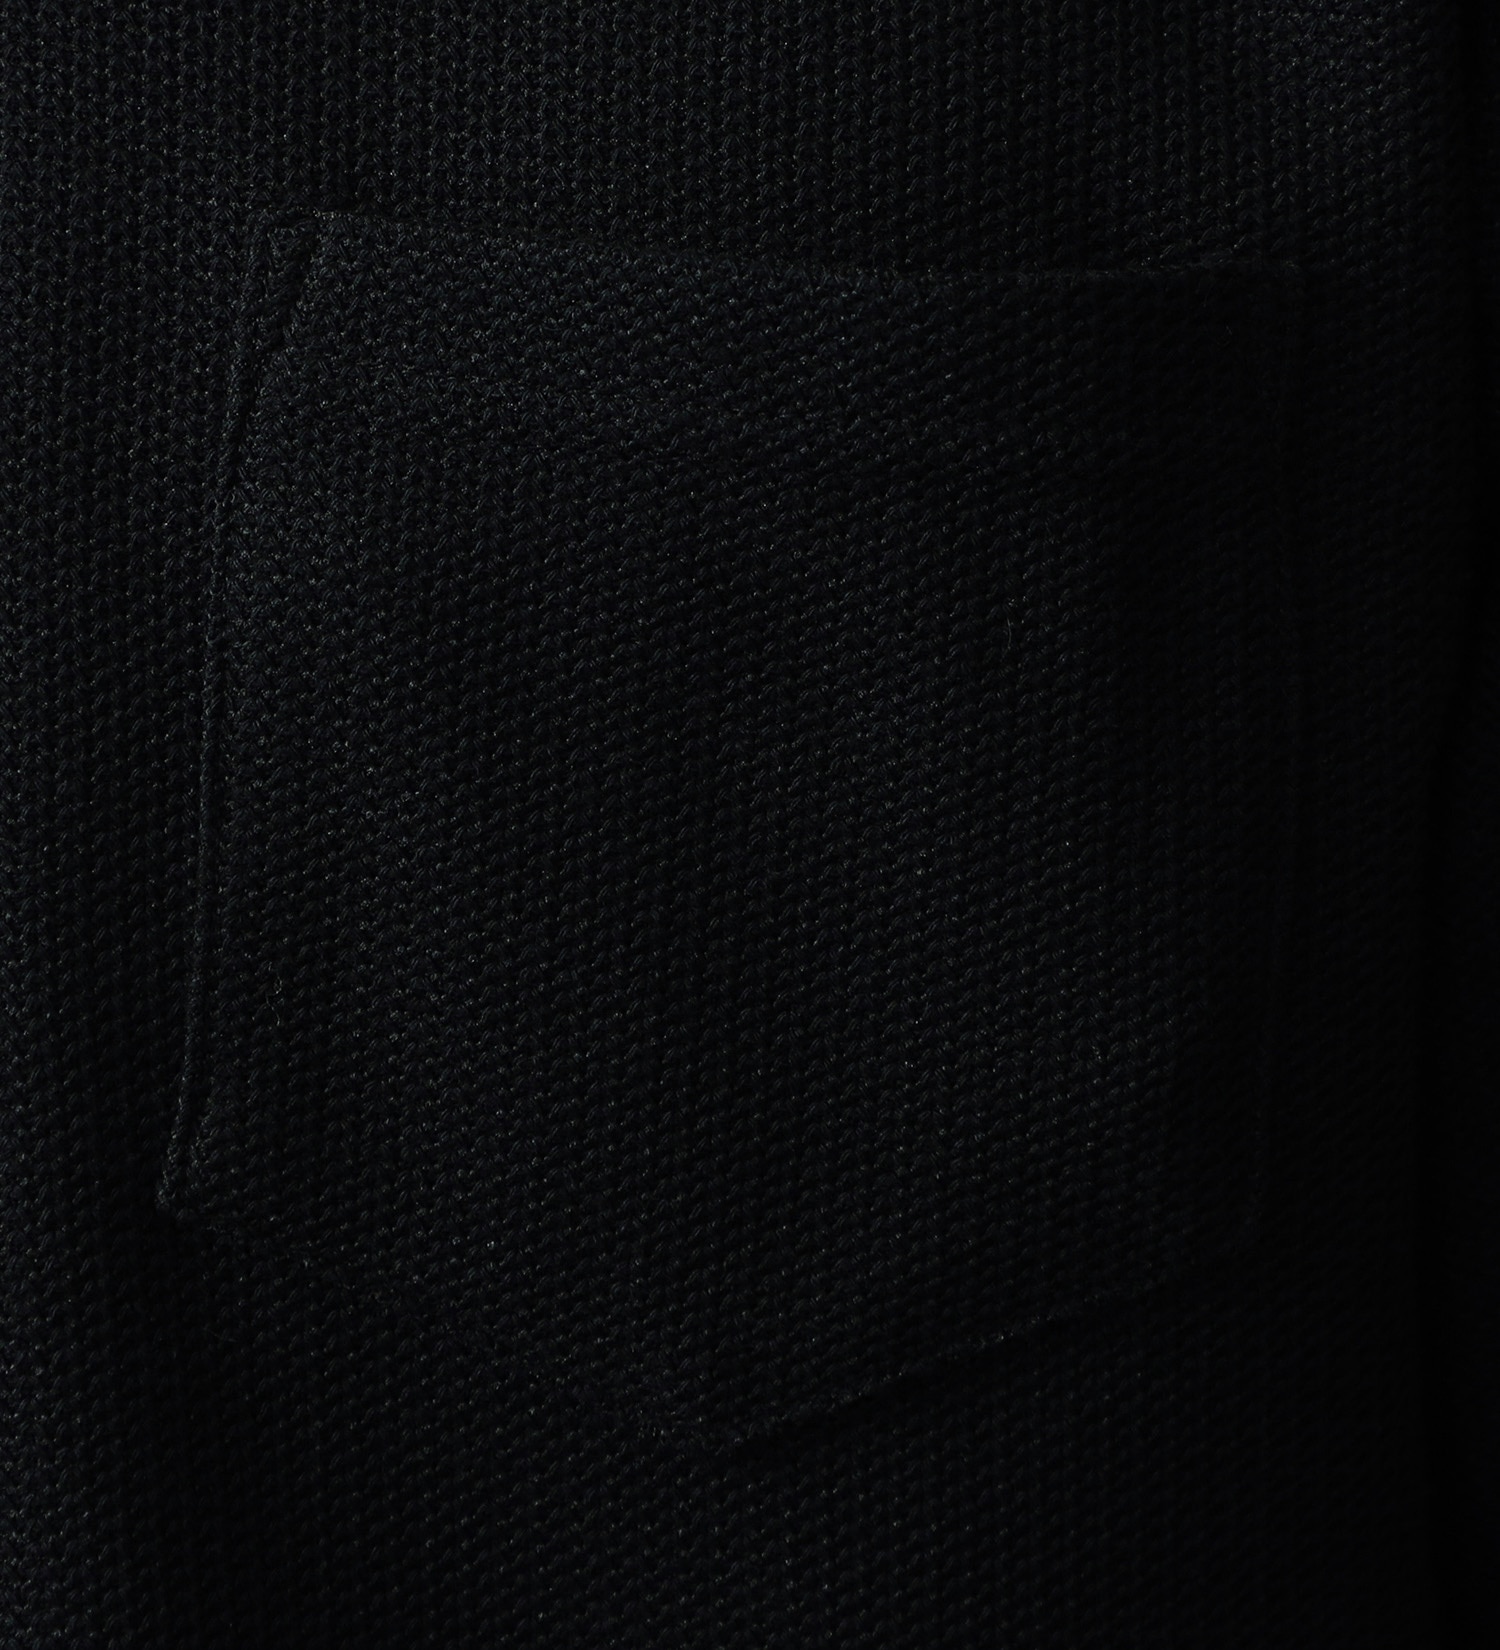 EDWIN(エドウイン)のメッシュレイヤード半袖Tシャツ【ビッグシルエット】【アウトレット店舗・WEB限定】|トップス/Tシャツ/カットソー/メンズ|ブラック